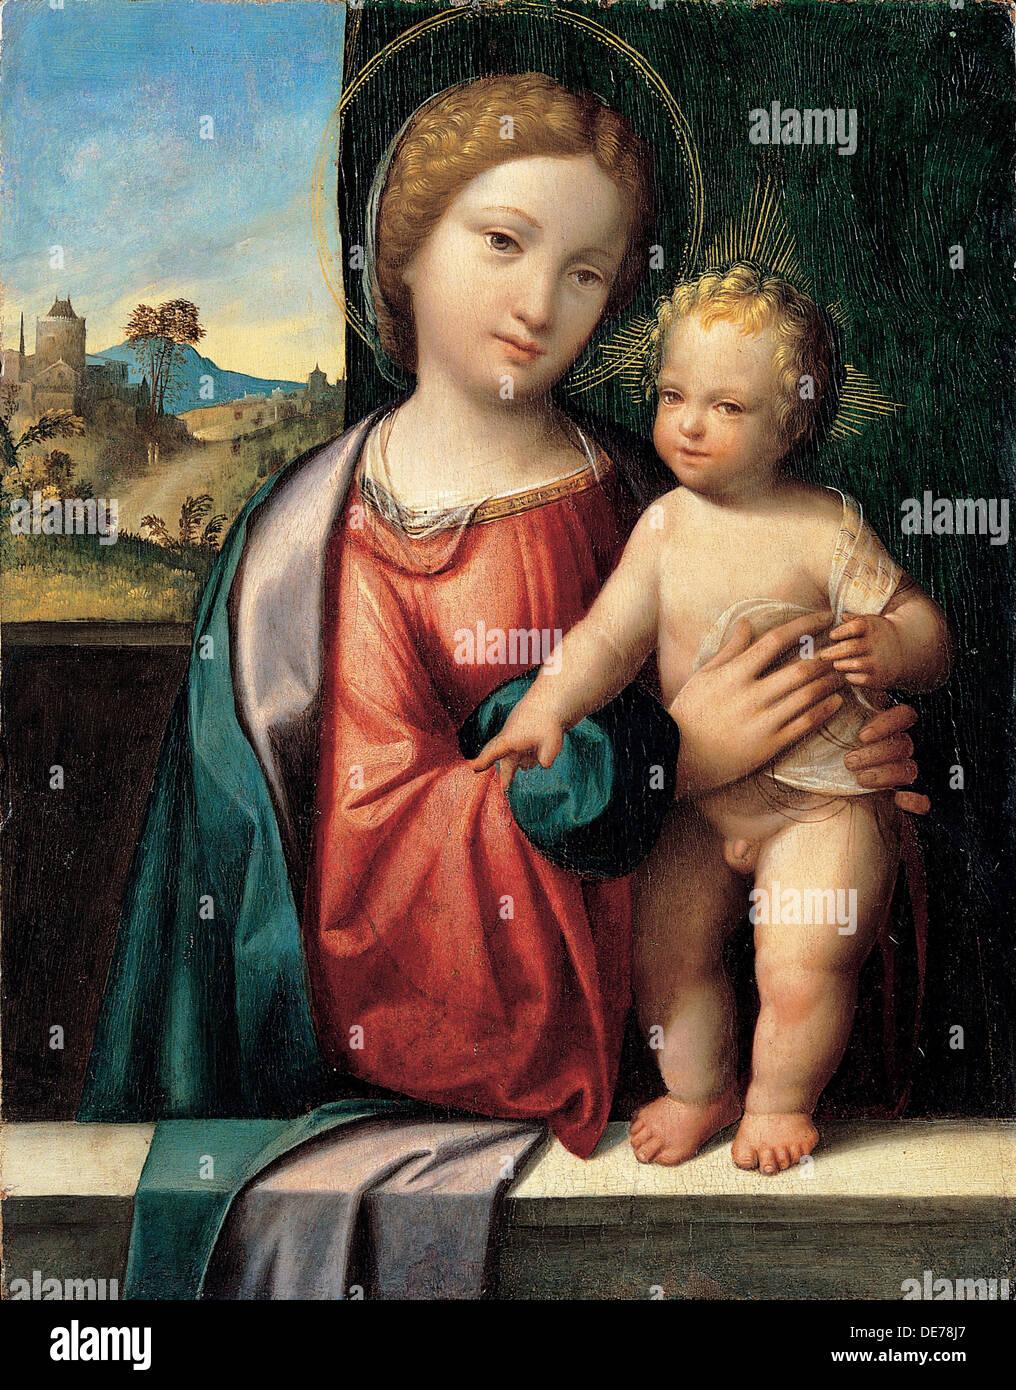 Madone avec l'enfant, 1512. Artiste : Garofalo, Benvenuto Tisi da (1481-1559) Banque D'Images